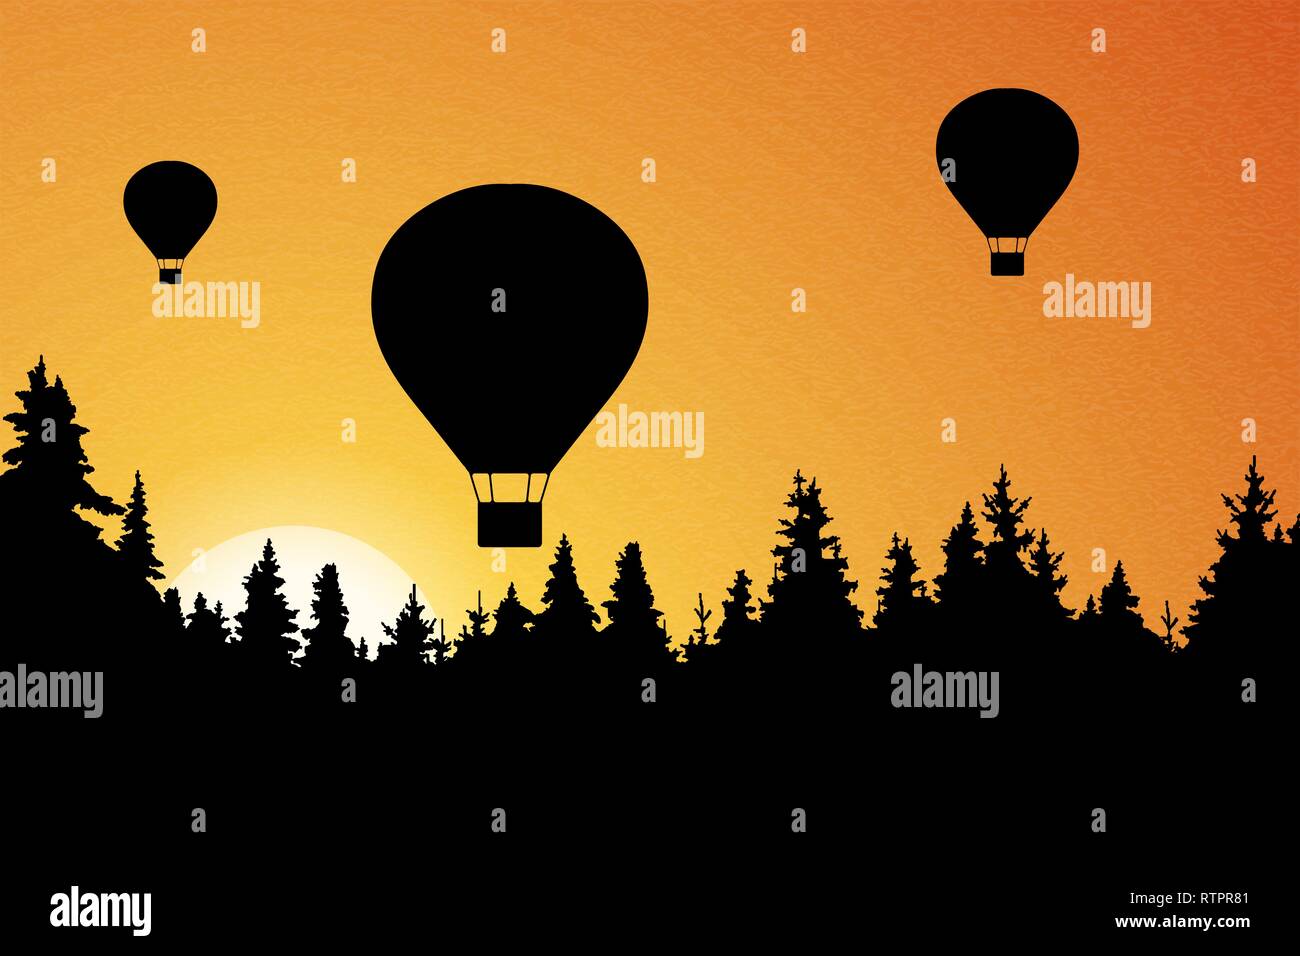 Vector illustration de paysage avec forêt, battant les ballons à air chaud et orange ciel avec soleil levant Illustration de Vecteur